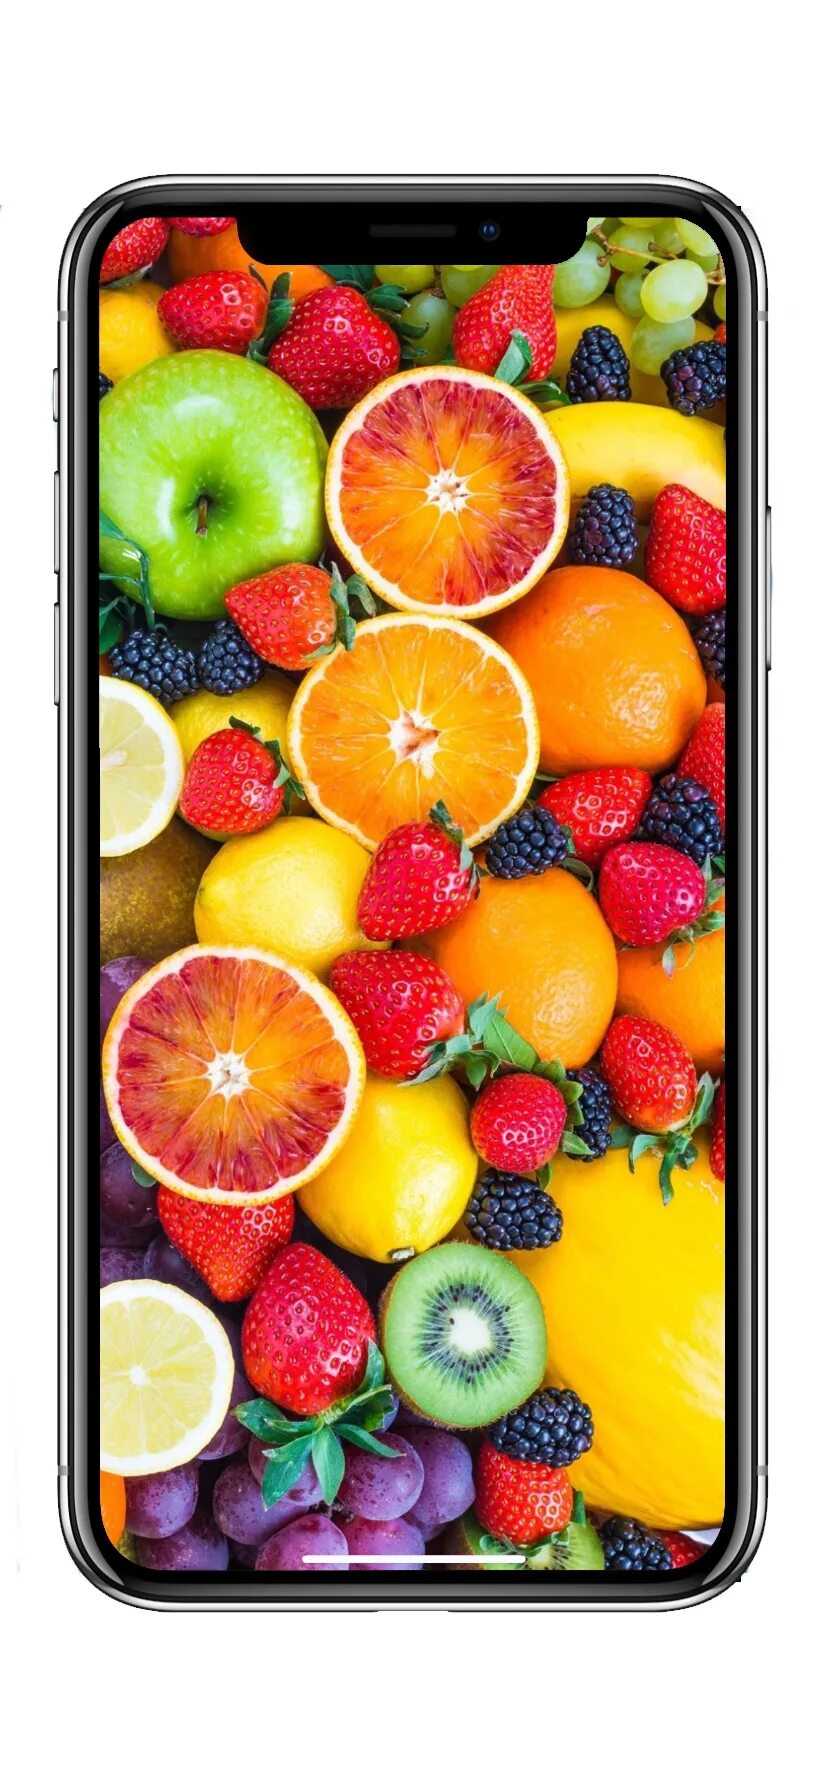 Фрукты на айфон. Заставка на айфон фрукты. Яркие фрукты на айфон. Фон для айфона фрукты. Крейзи фрукт на iphone